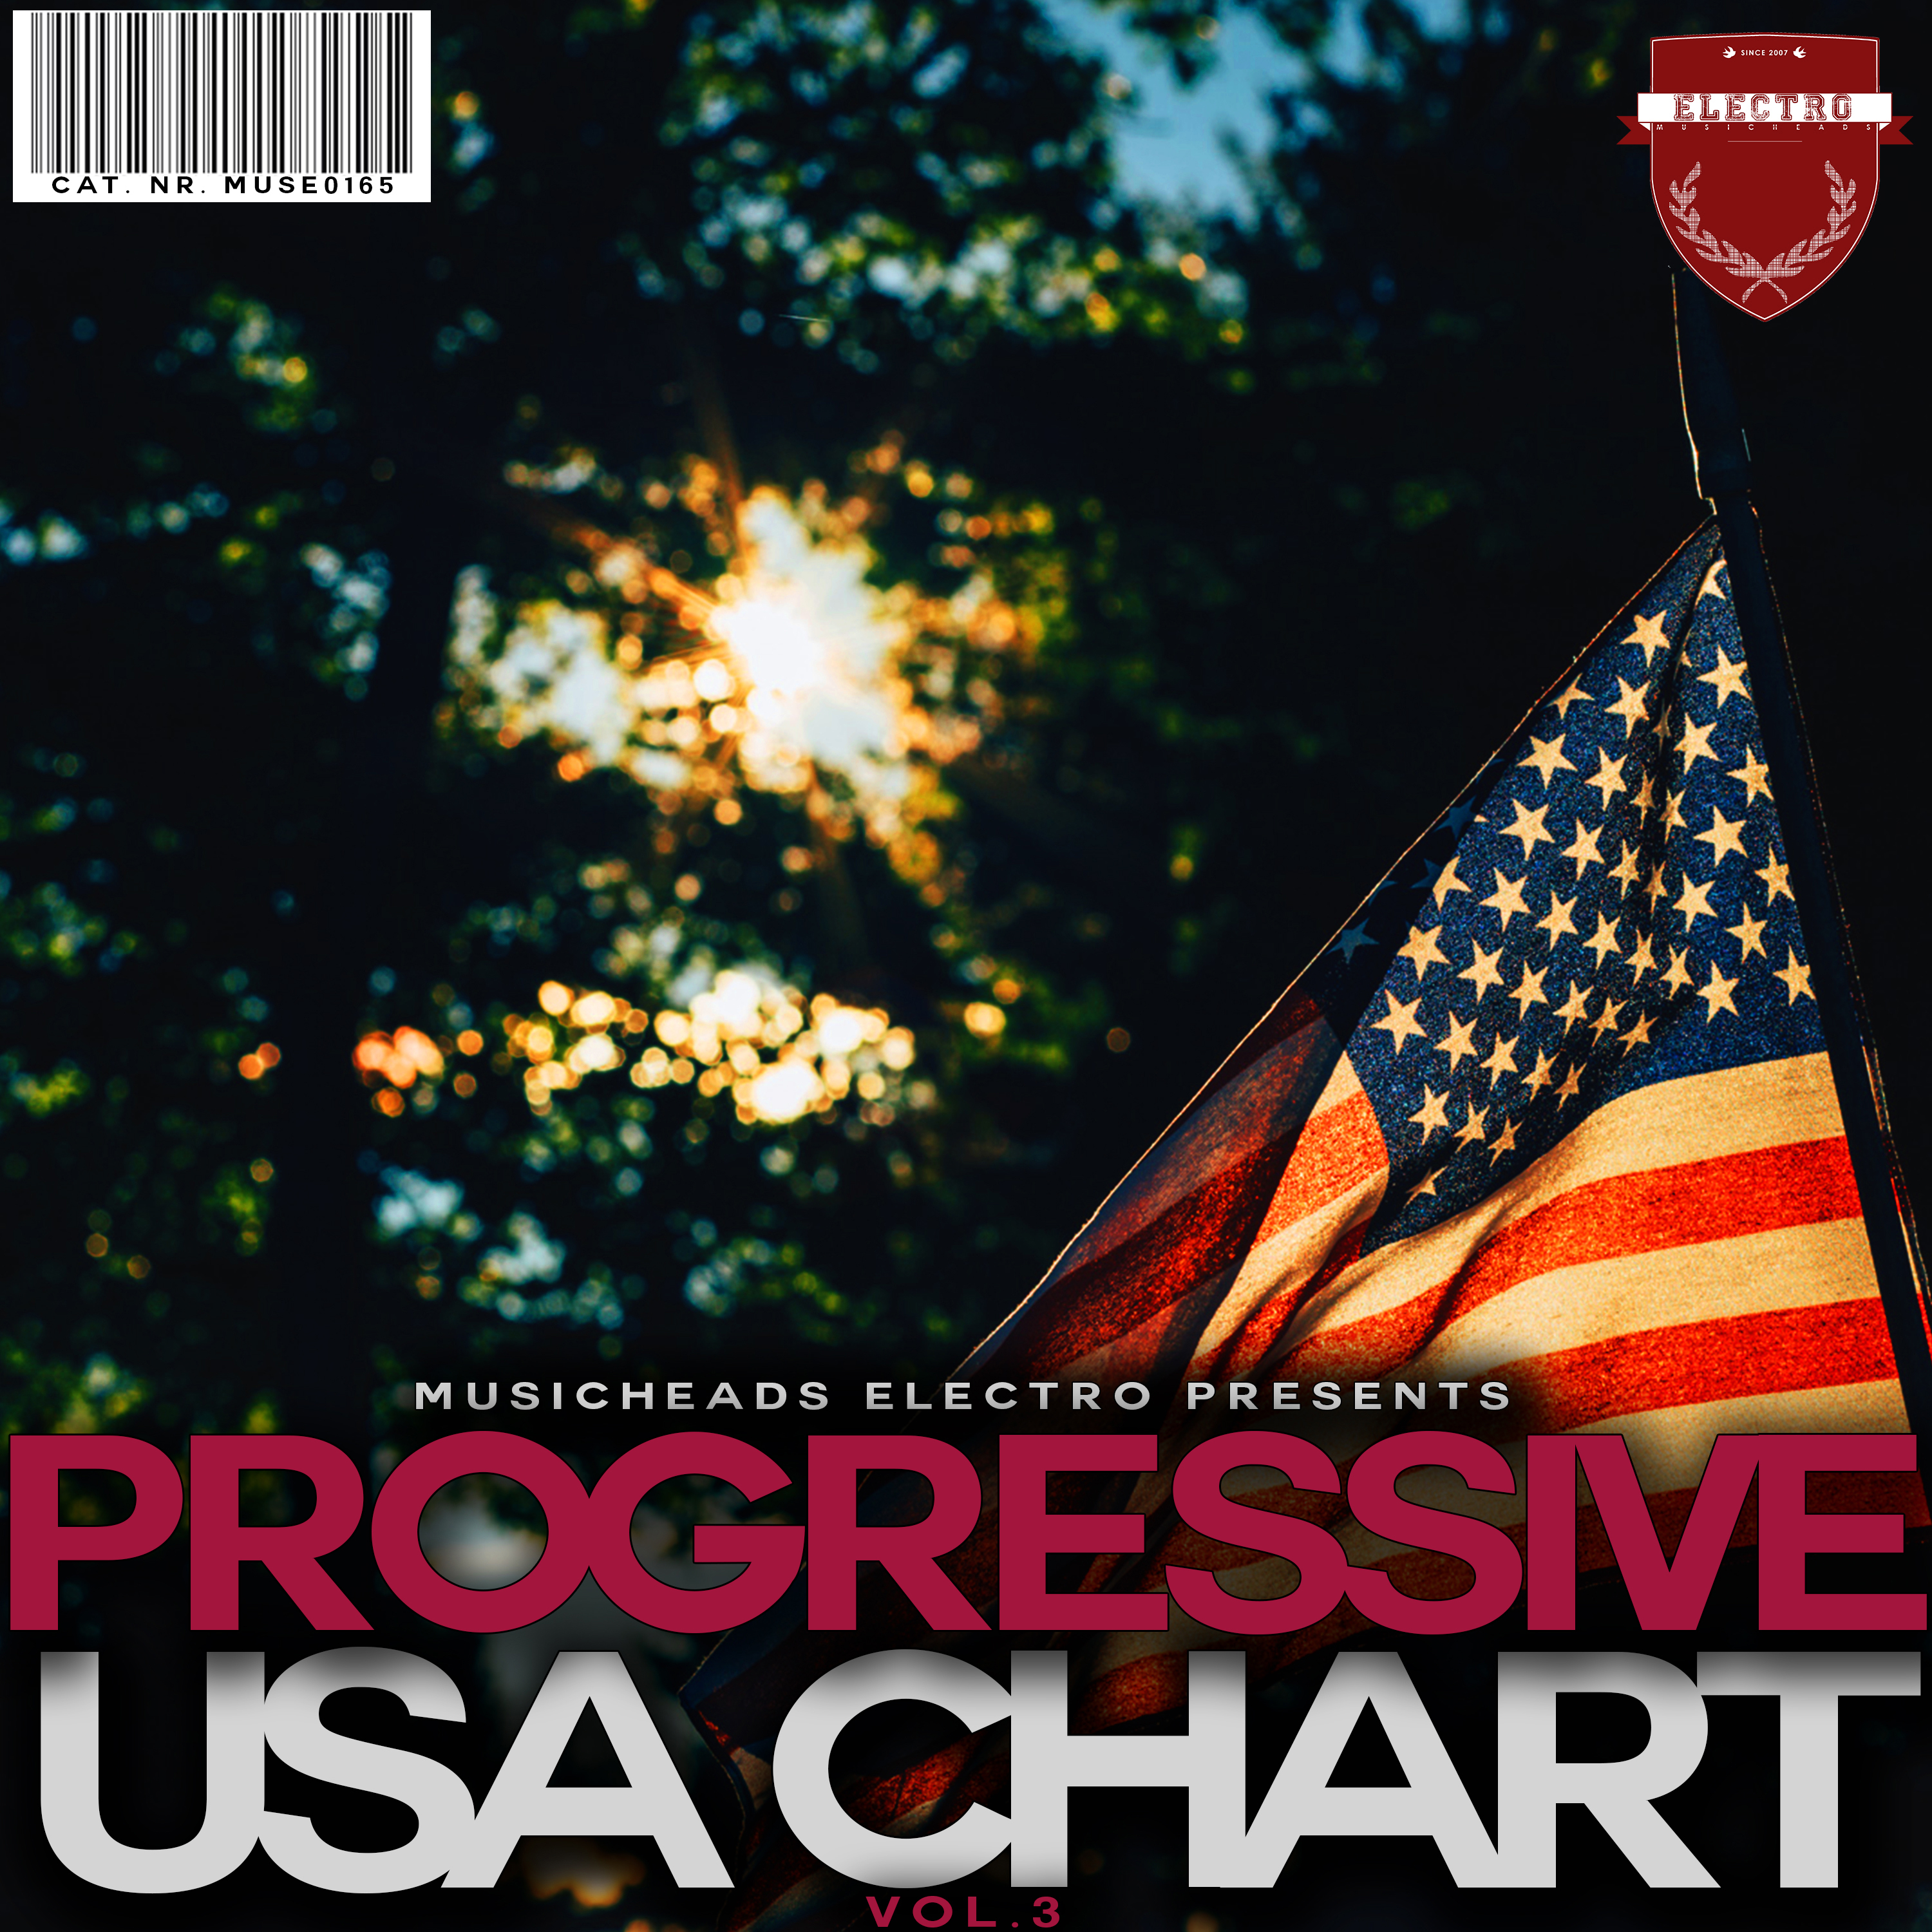 Progressive USA Chart, Vol. 3